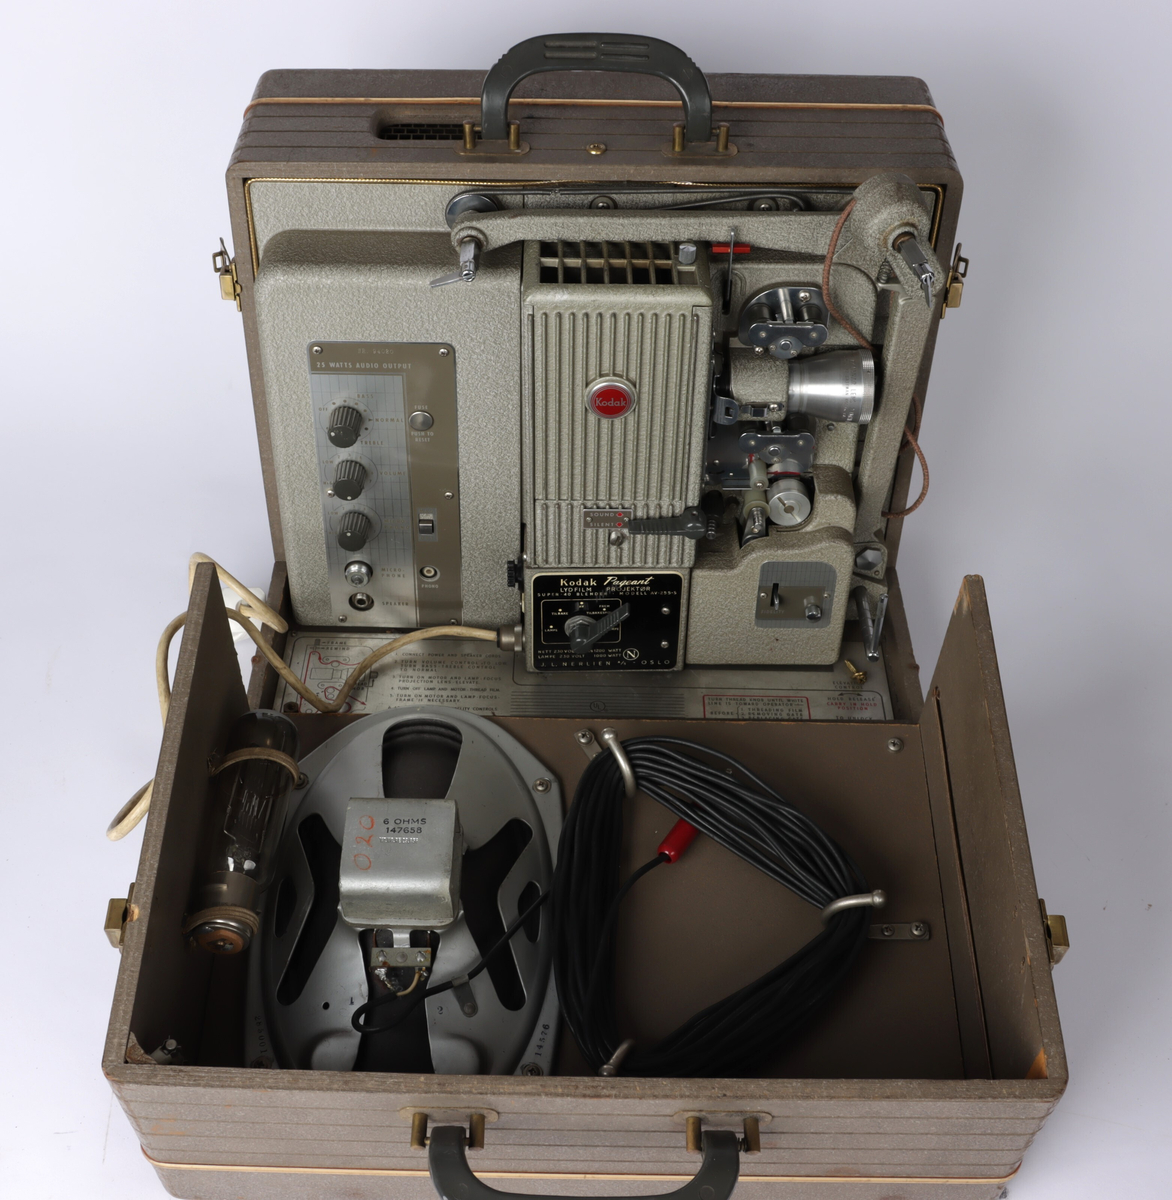 Fremviser/prosjektor fra Kodak bygd inn i en kasse av lakket komposittmateriale. Kassen har låser på hver side slik at den kan åpnes og sidepanelet fjernes. På toppen av kassen er det to hanker for å bære.